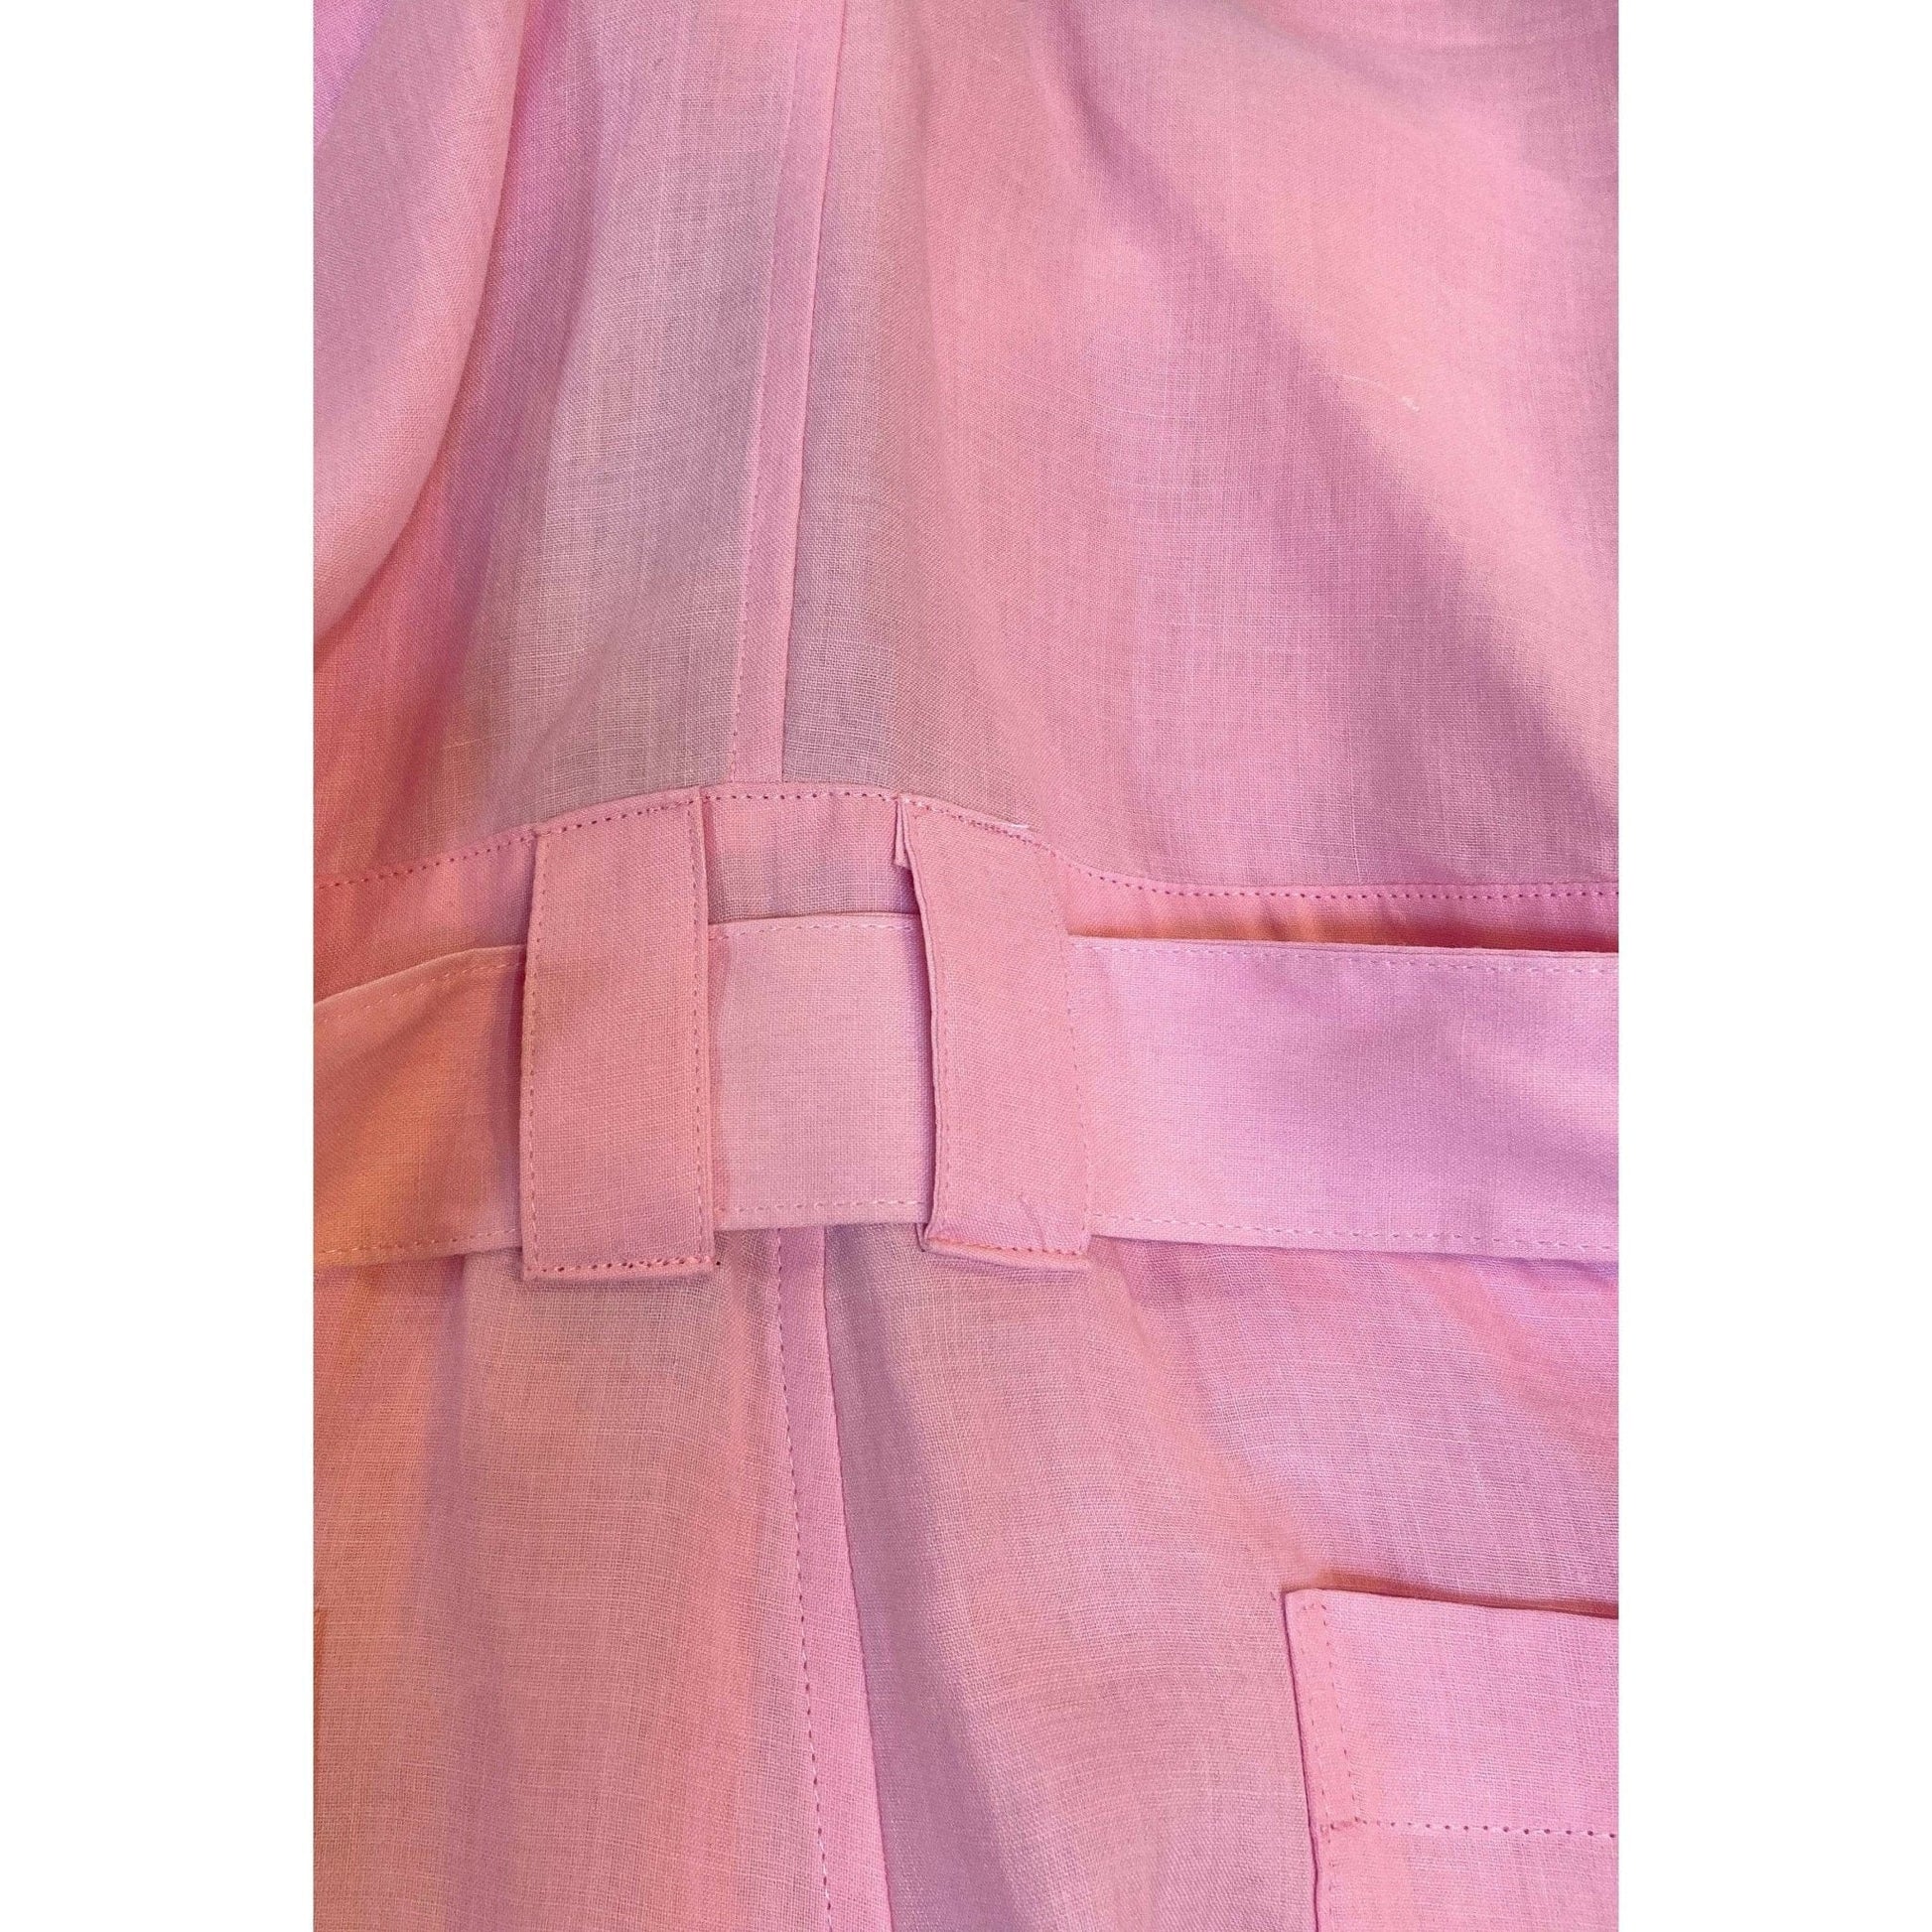 Junya Watanabe Pink Linen Short Overalls Rosy Brown